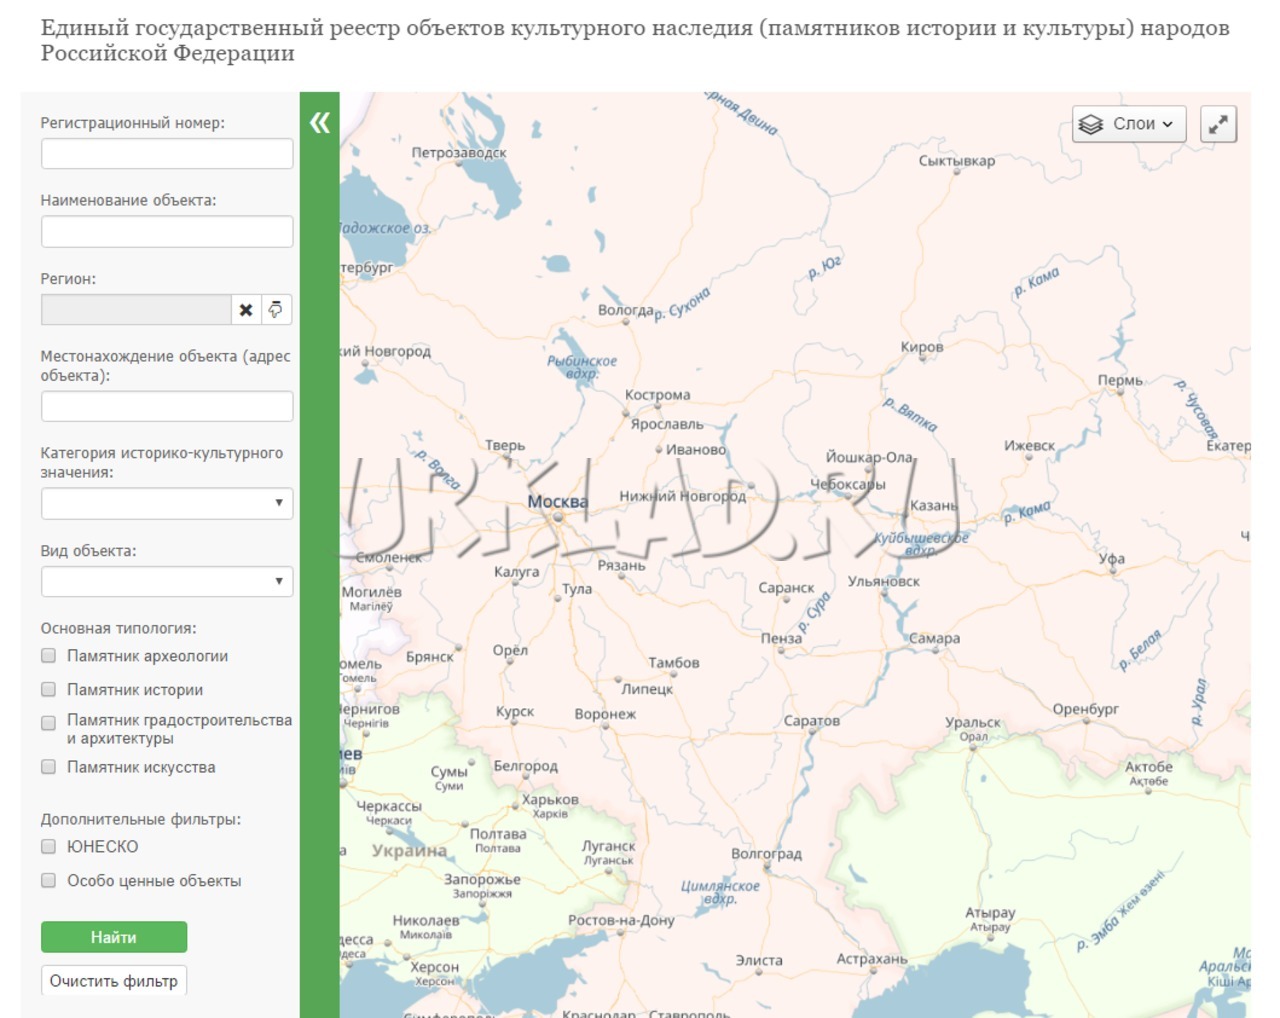 Публичная кадастровая карта города иркутска